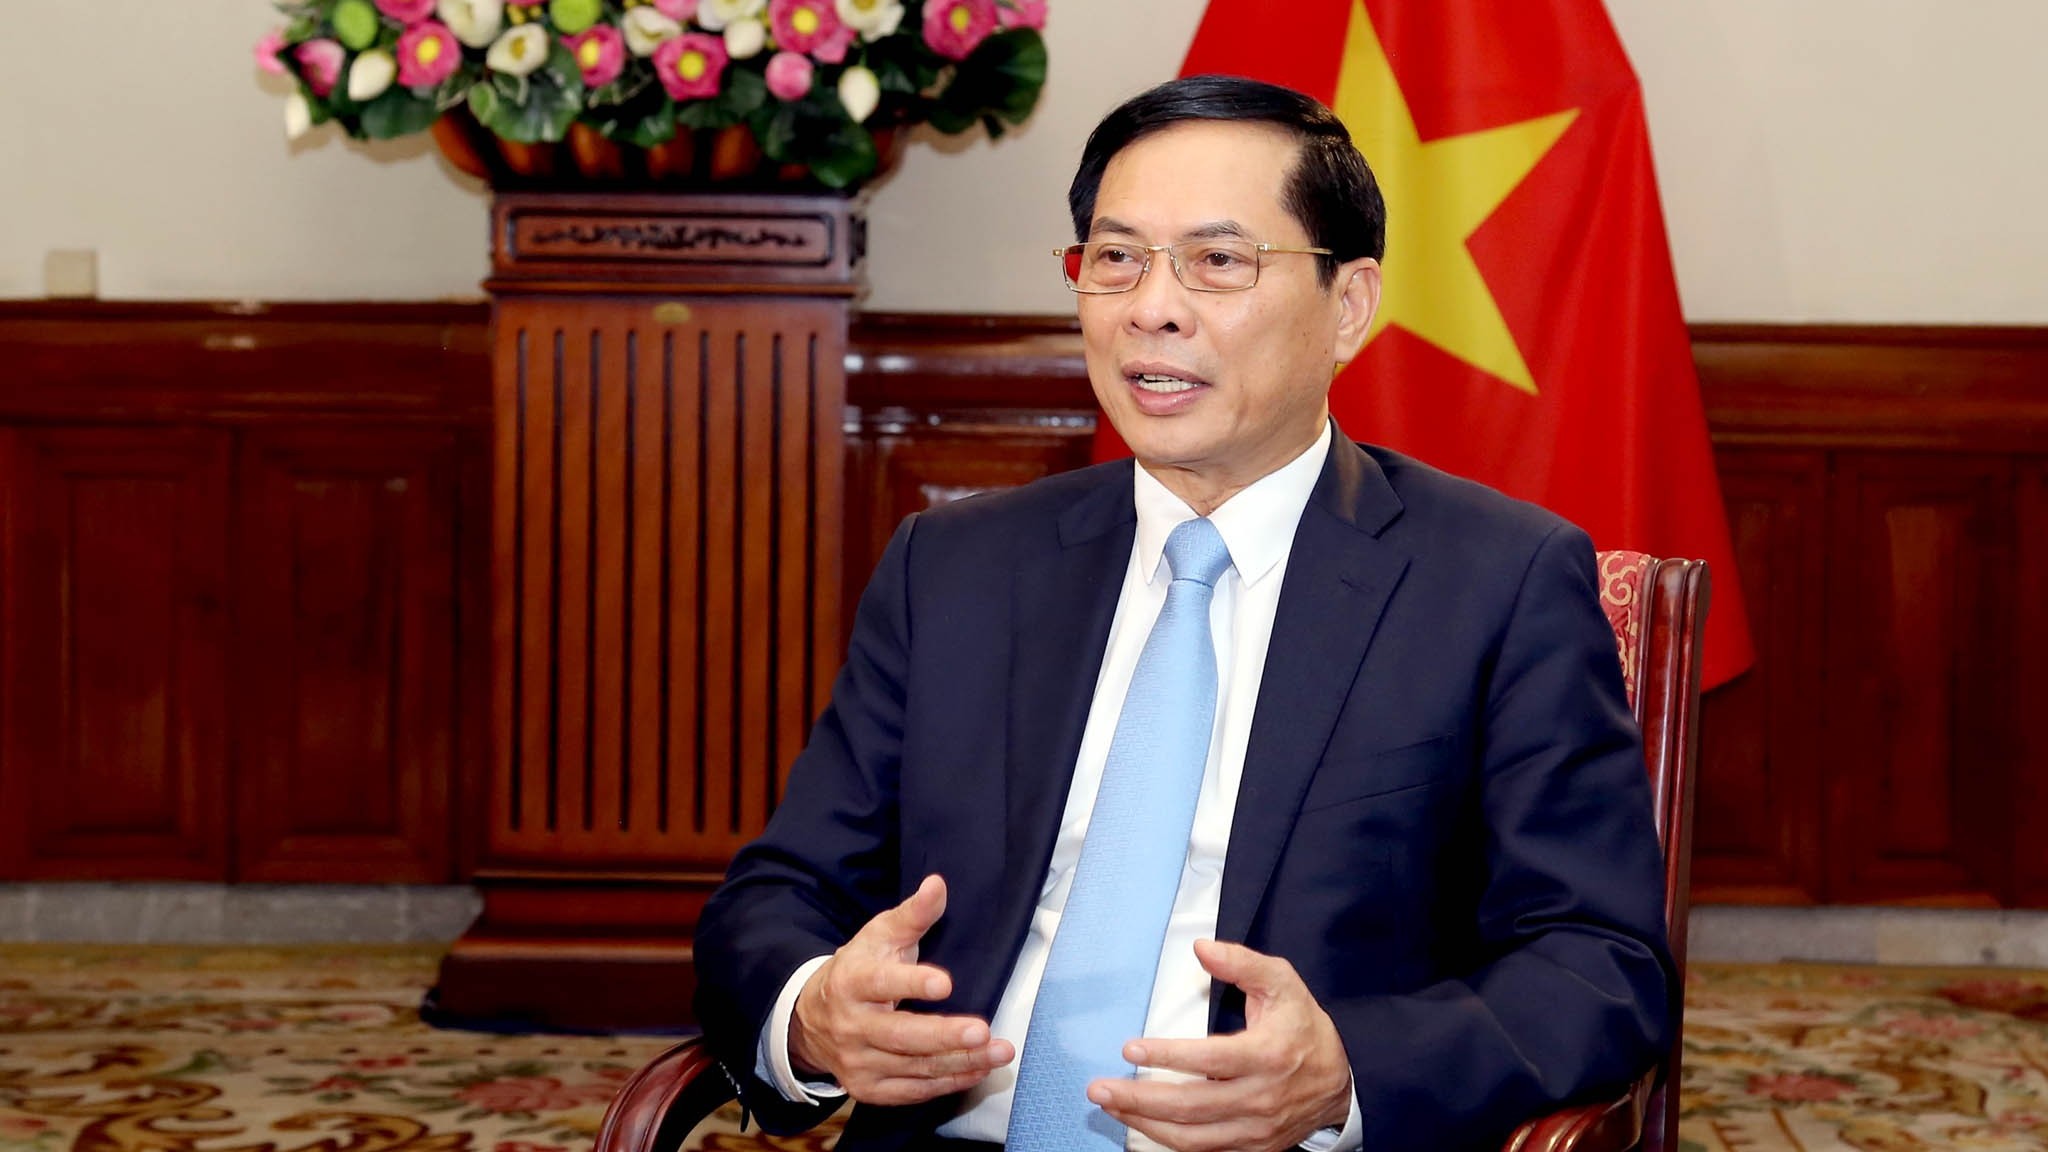 Bộ trưởng Ngoại giao Bùi Thanh Sơn: Công tác đối ngoại và ngoại giao là điểm sáng trong thành tựu chung của đất nước